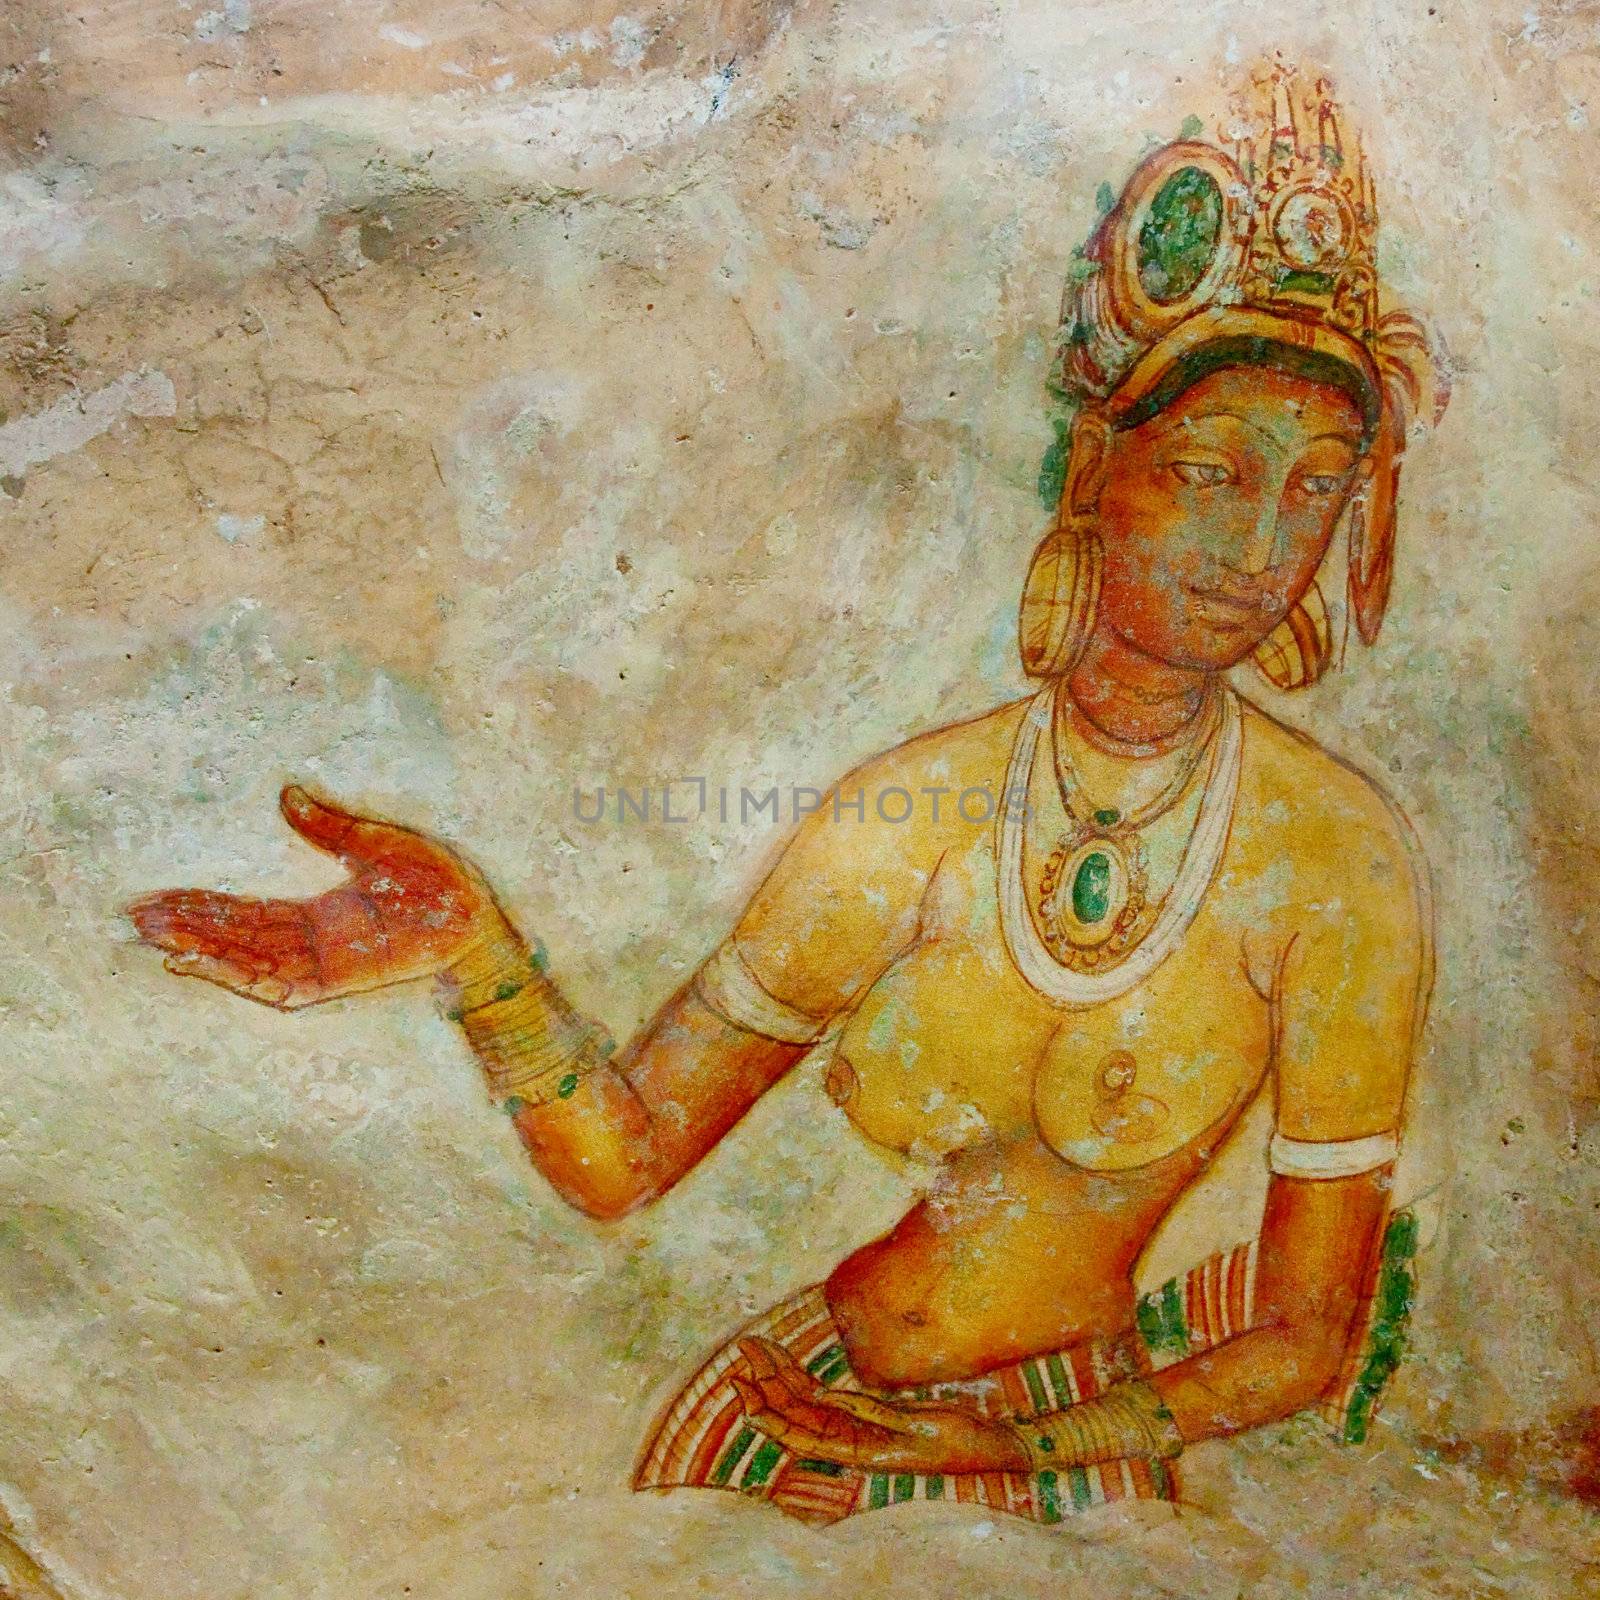 Ancient famous wall paintings (frescoes) at Sigirya, Sri Lanka.